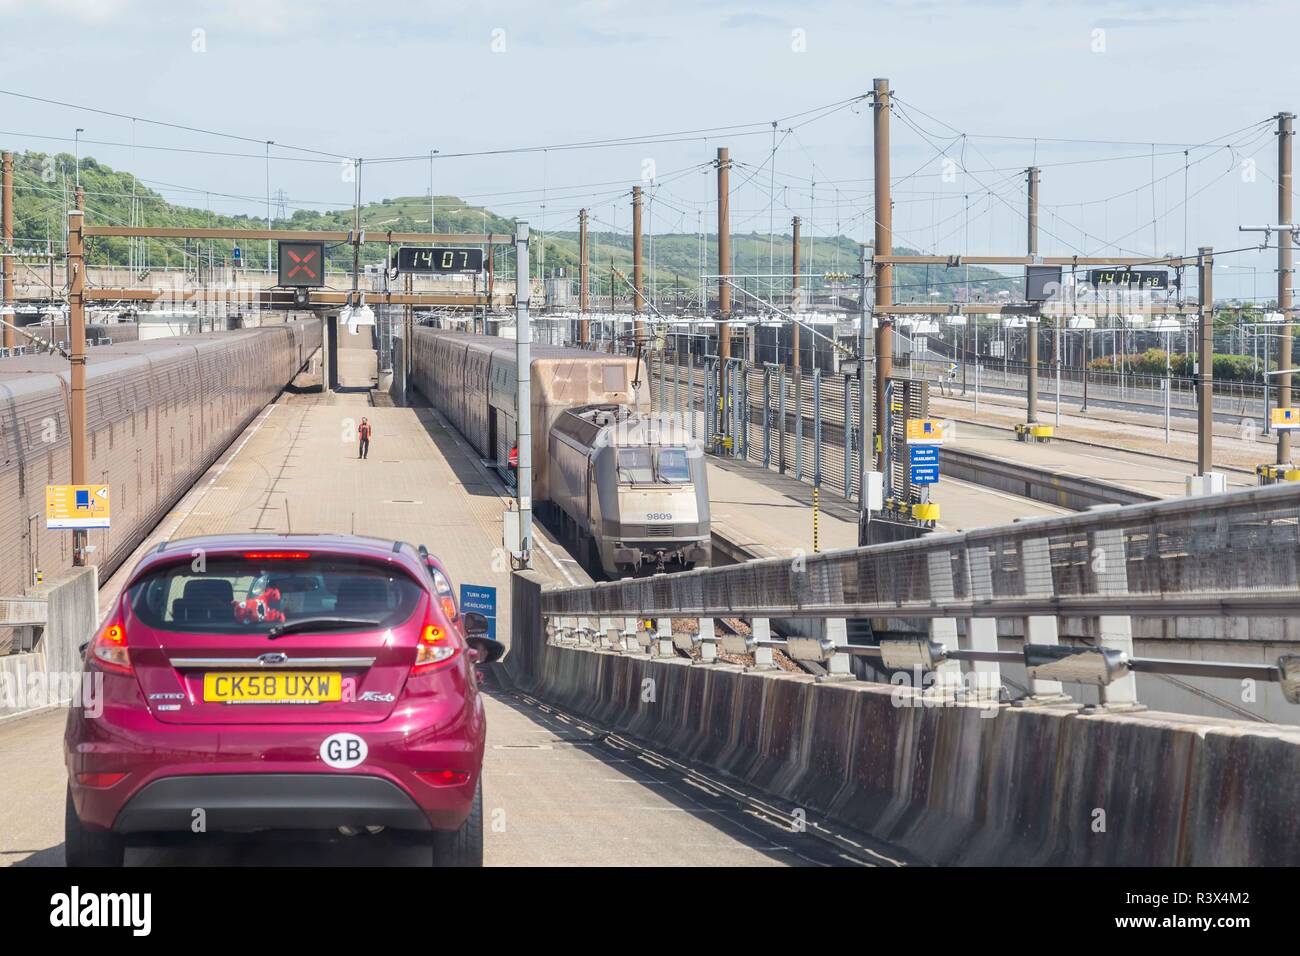 Channel Tunnel, England - Juni 4, 2017: Autos über die Hohe Geschwindigkeit Eurostar Züge für den Kanaltunnel zwischen Frankreich und England. Stockfoto